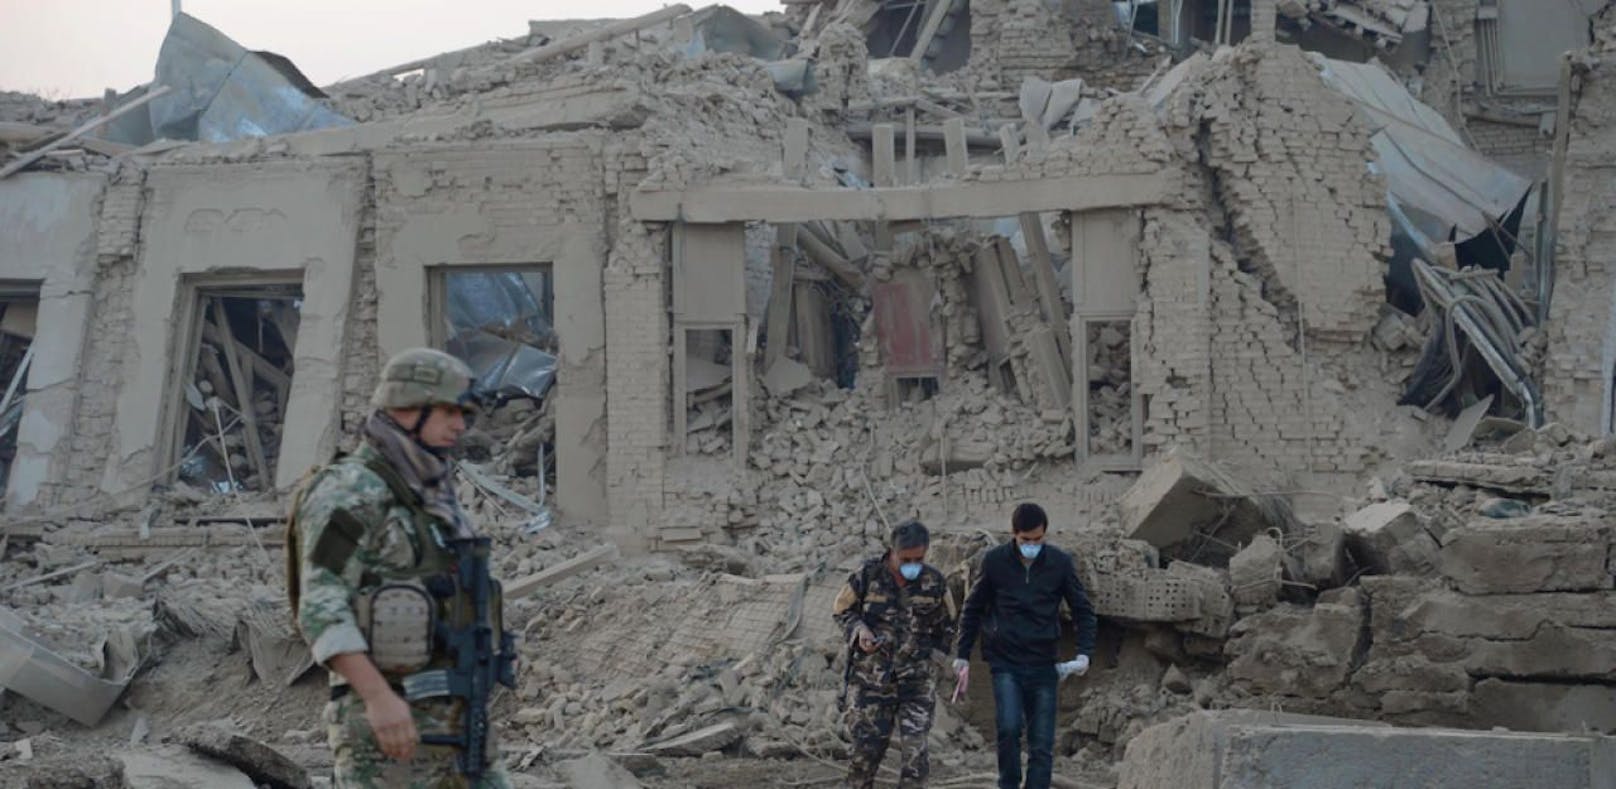 Das deutsche Konsulat in Kabul nach dem verheerenden Anschlag